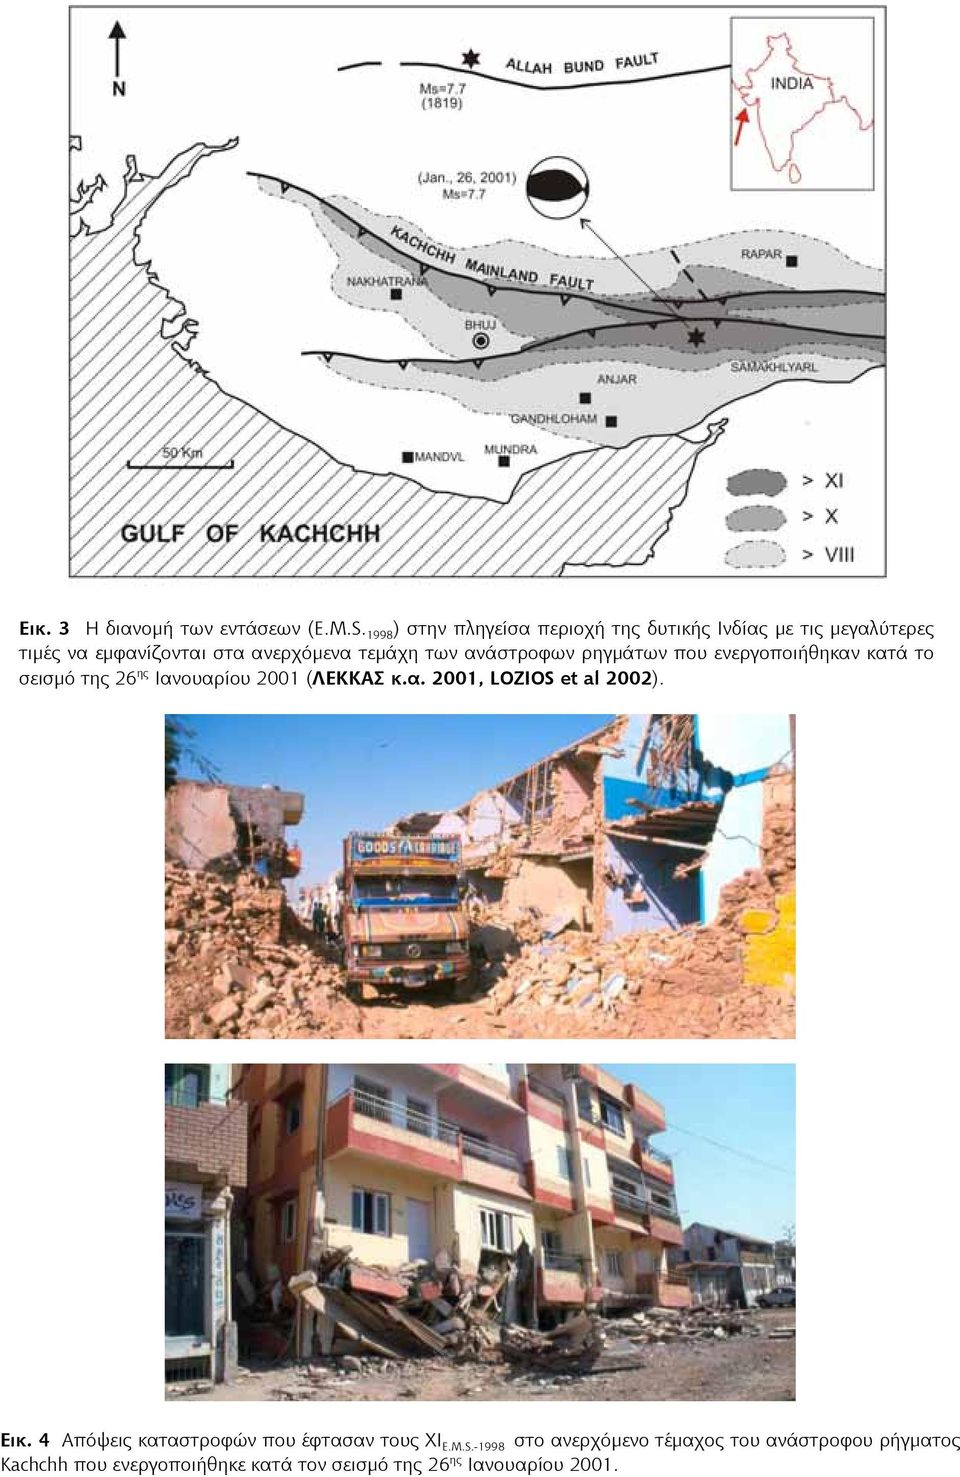 των ανάστροφων ρηγμάτων που ενεργοποιήθηκαν κατά το σεισμό της 26 ης Ιανουαρίου 2001 (ΛΕΚΚΑΣ κ.α. 2001, LOZIOS et al 2002).